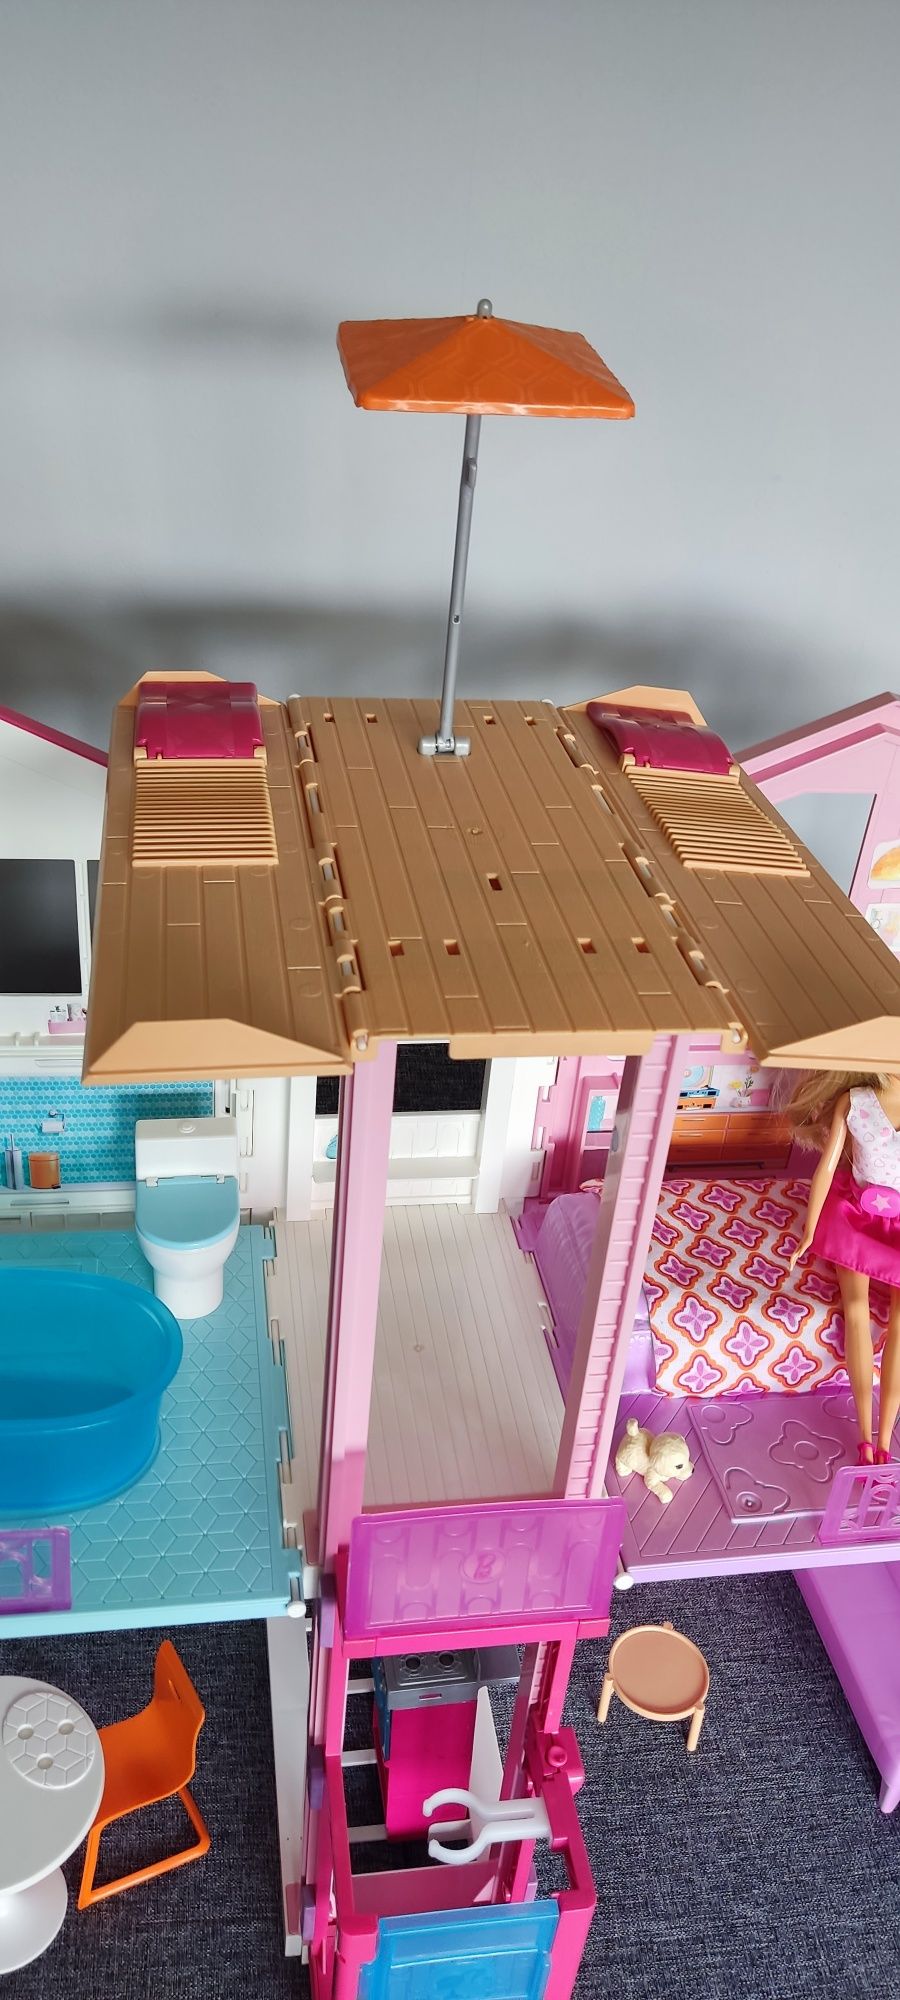 Domek Barbie z akcesoriami